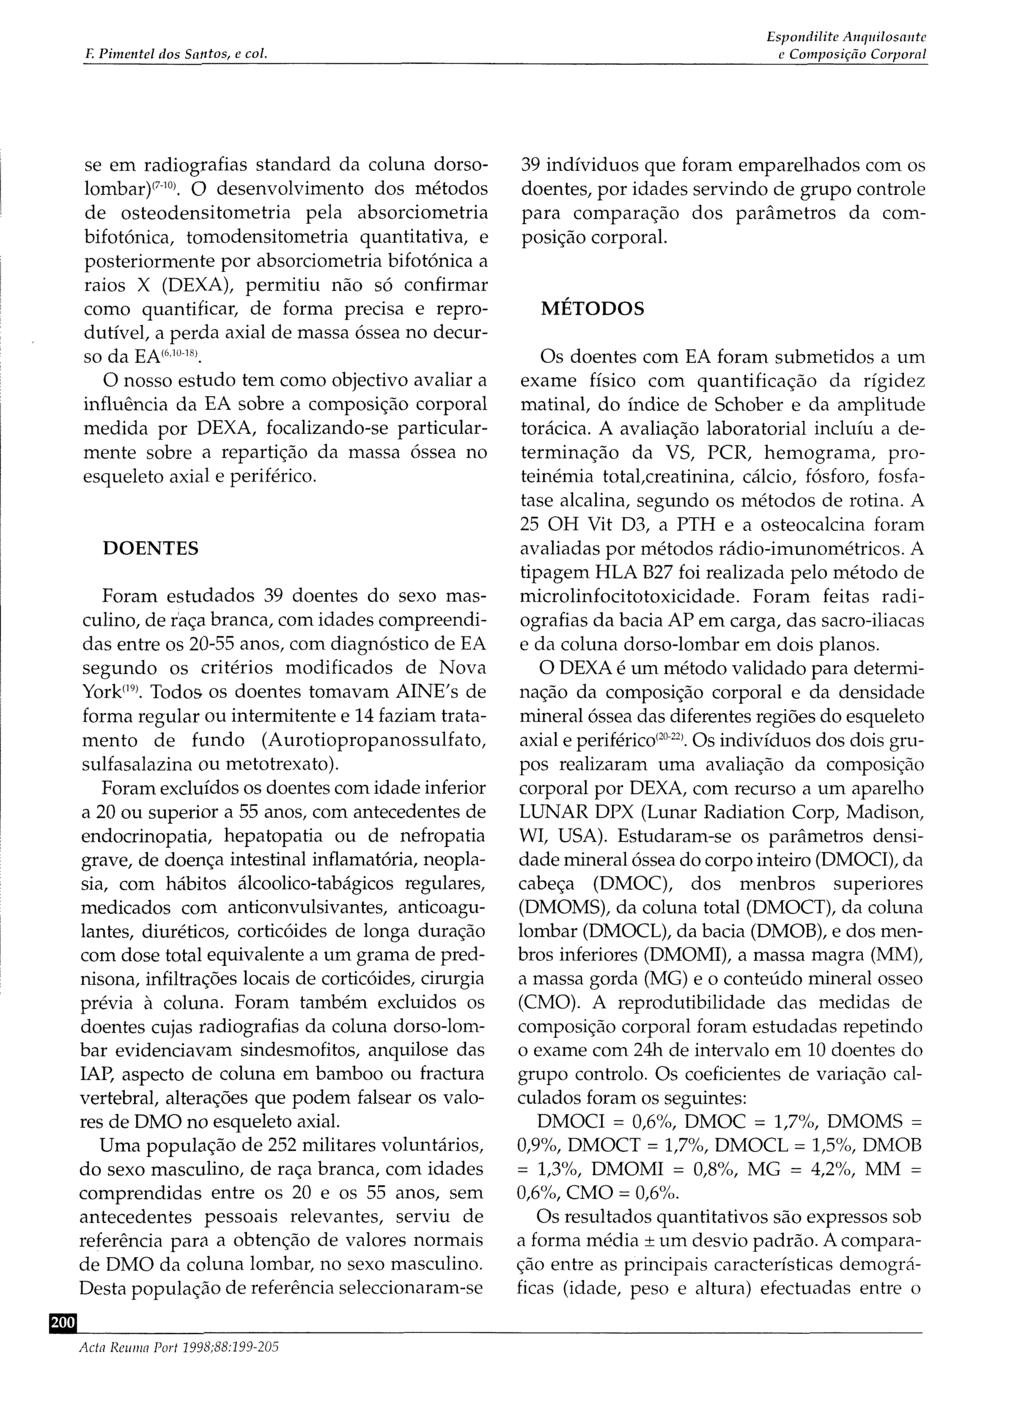 F. Pimentel dos Santos, e col. Espondiiite Anquilosante e Composição Corporal se em radiografias standard da coluna dorsolombar) (710).